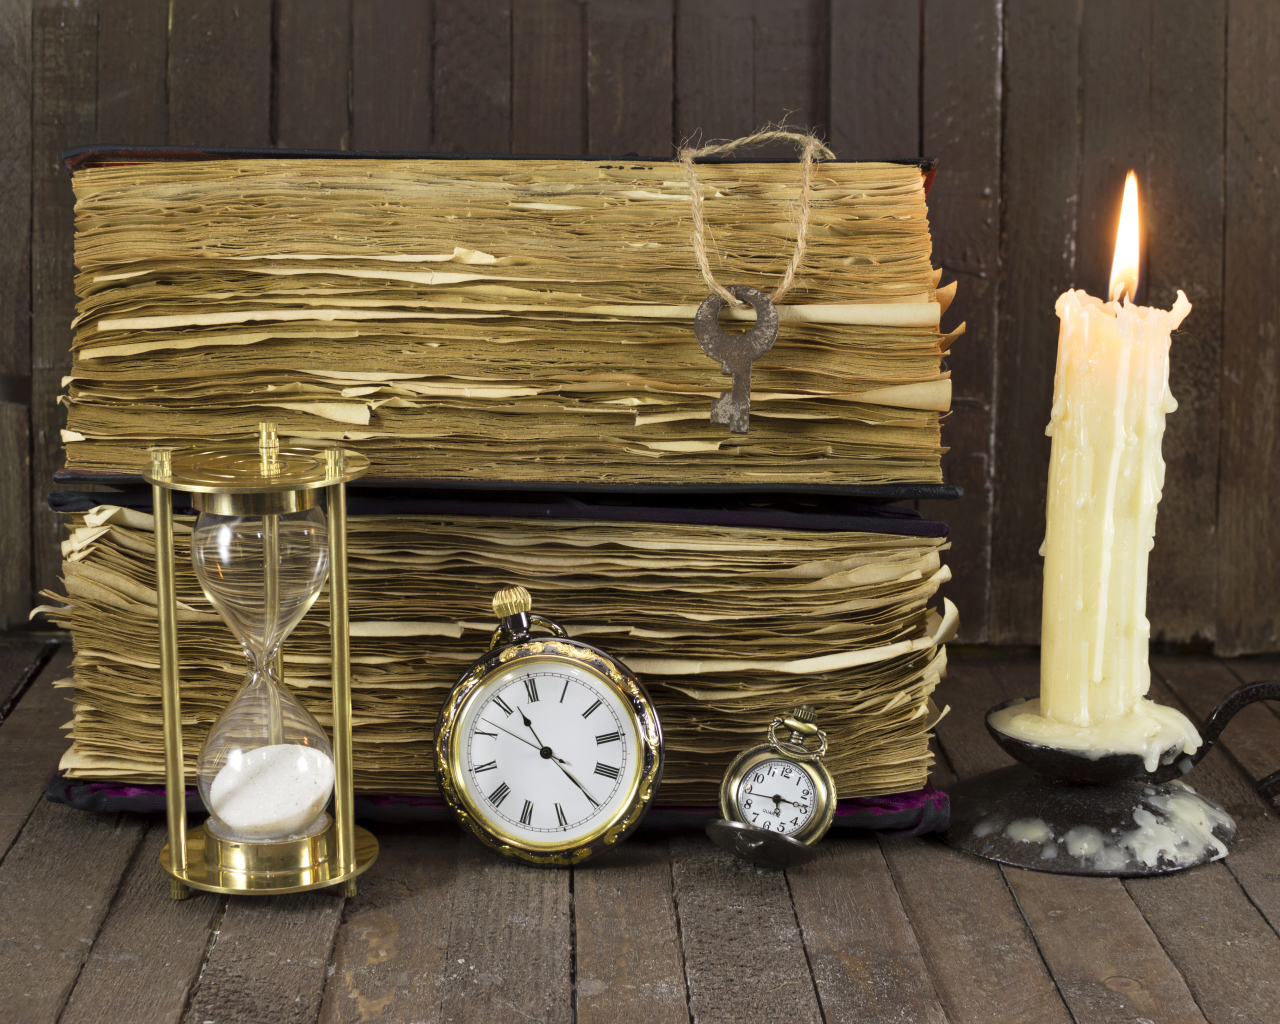 Старинные книги, зажженная свеча, ключи и часы на столе